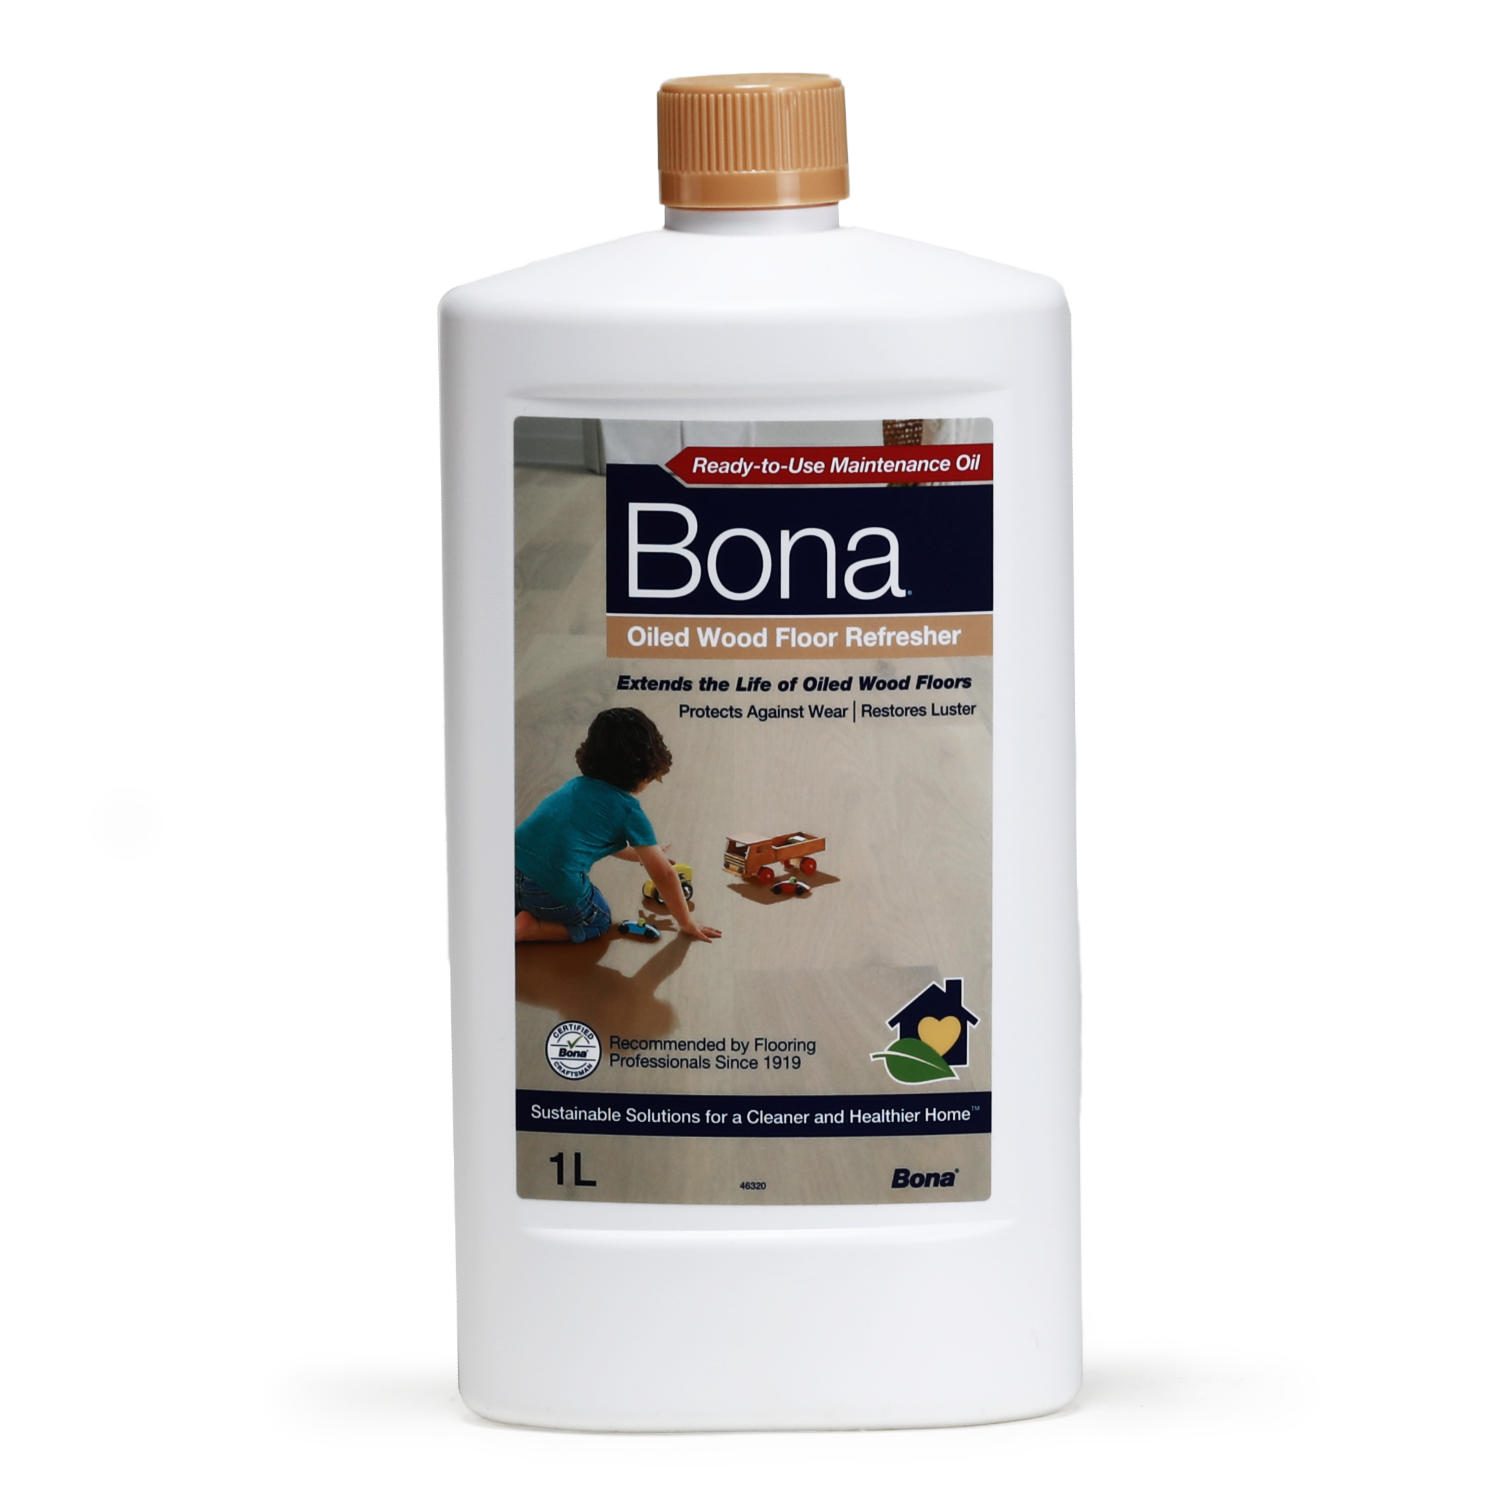 Bona Oiled Wood Floor Refresher